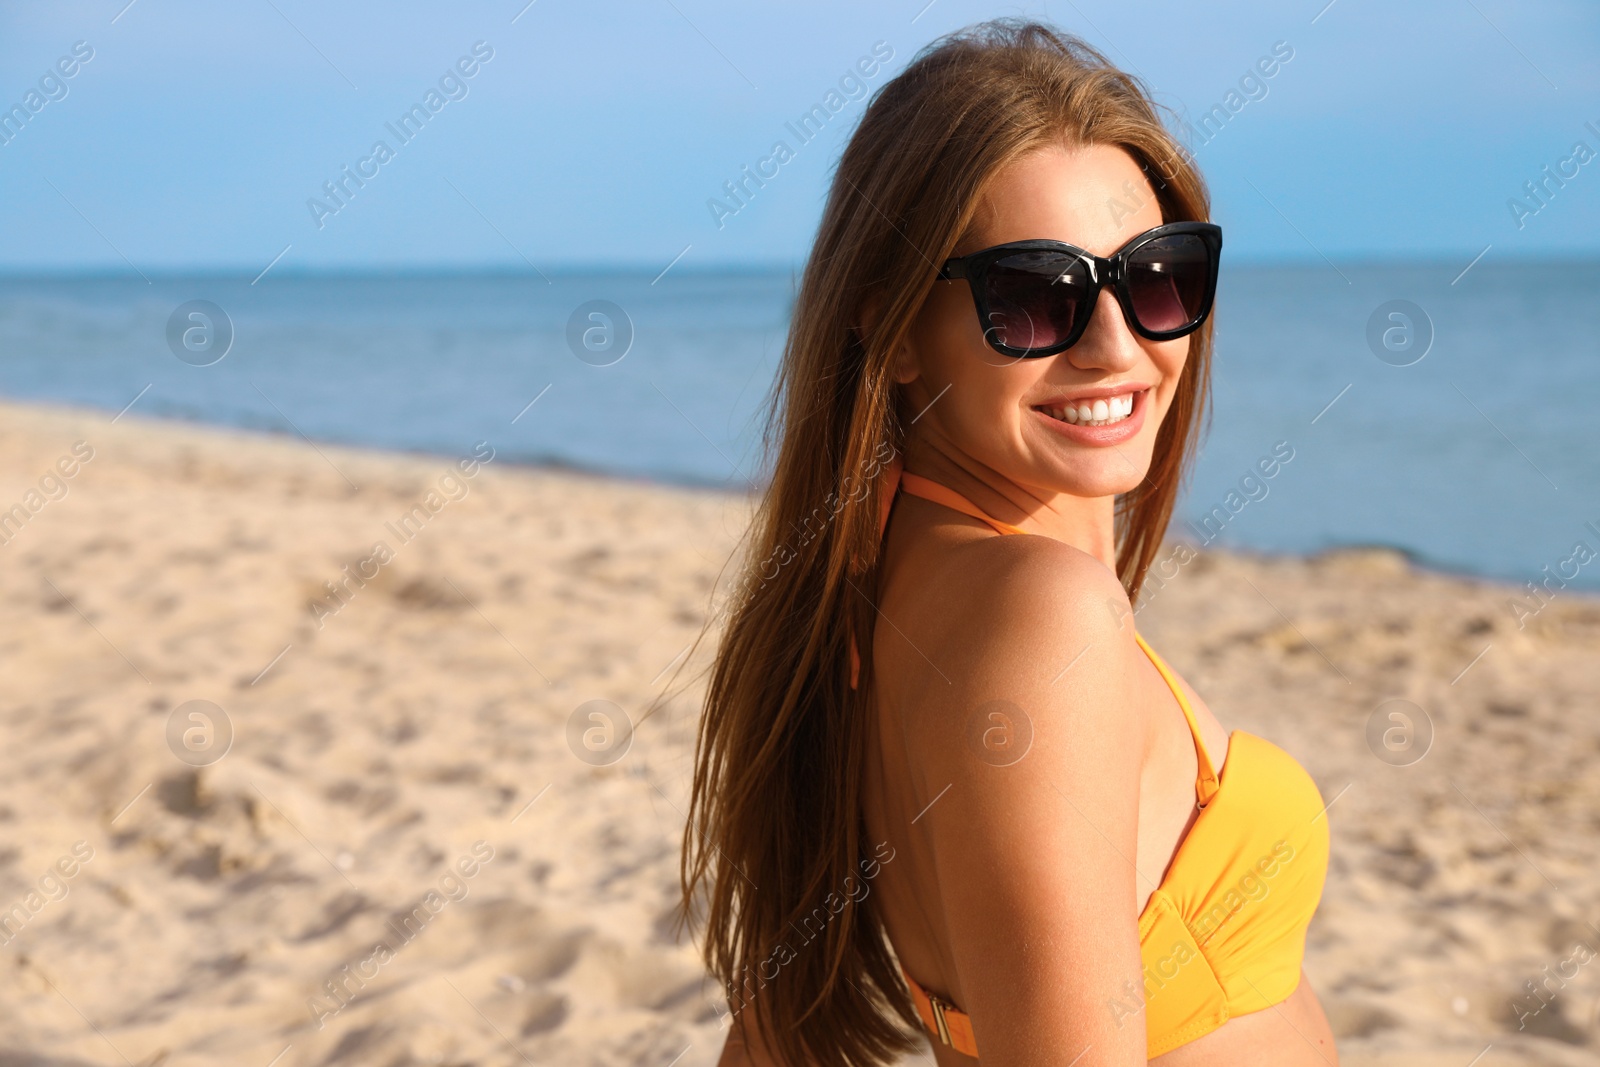 Photo of Beautiful young woman in bikini on beach